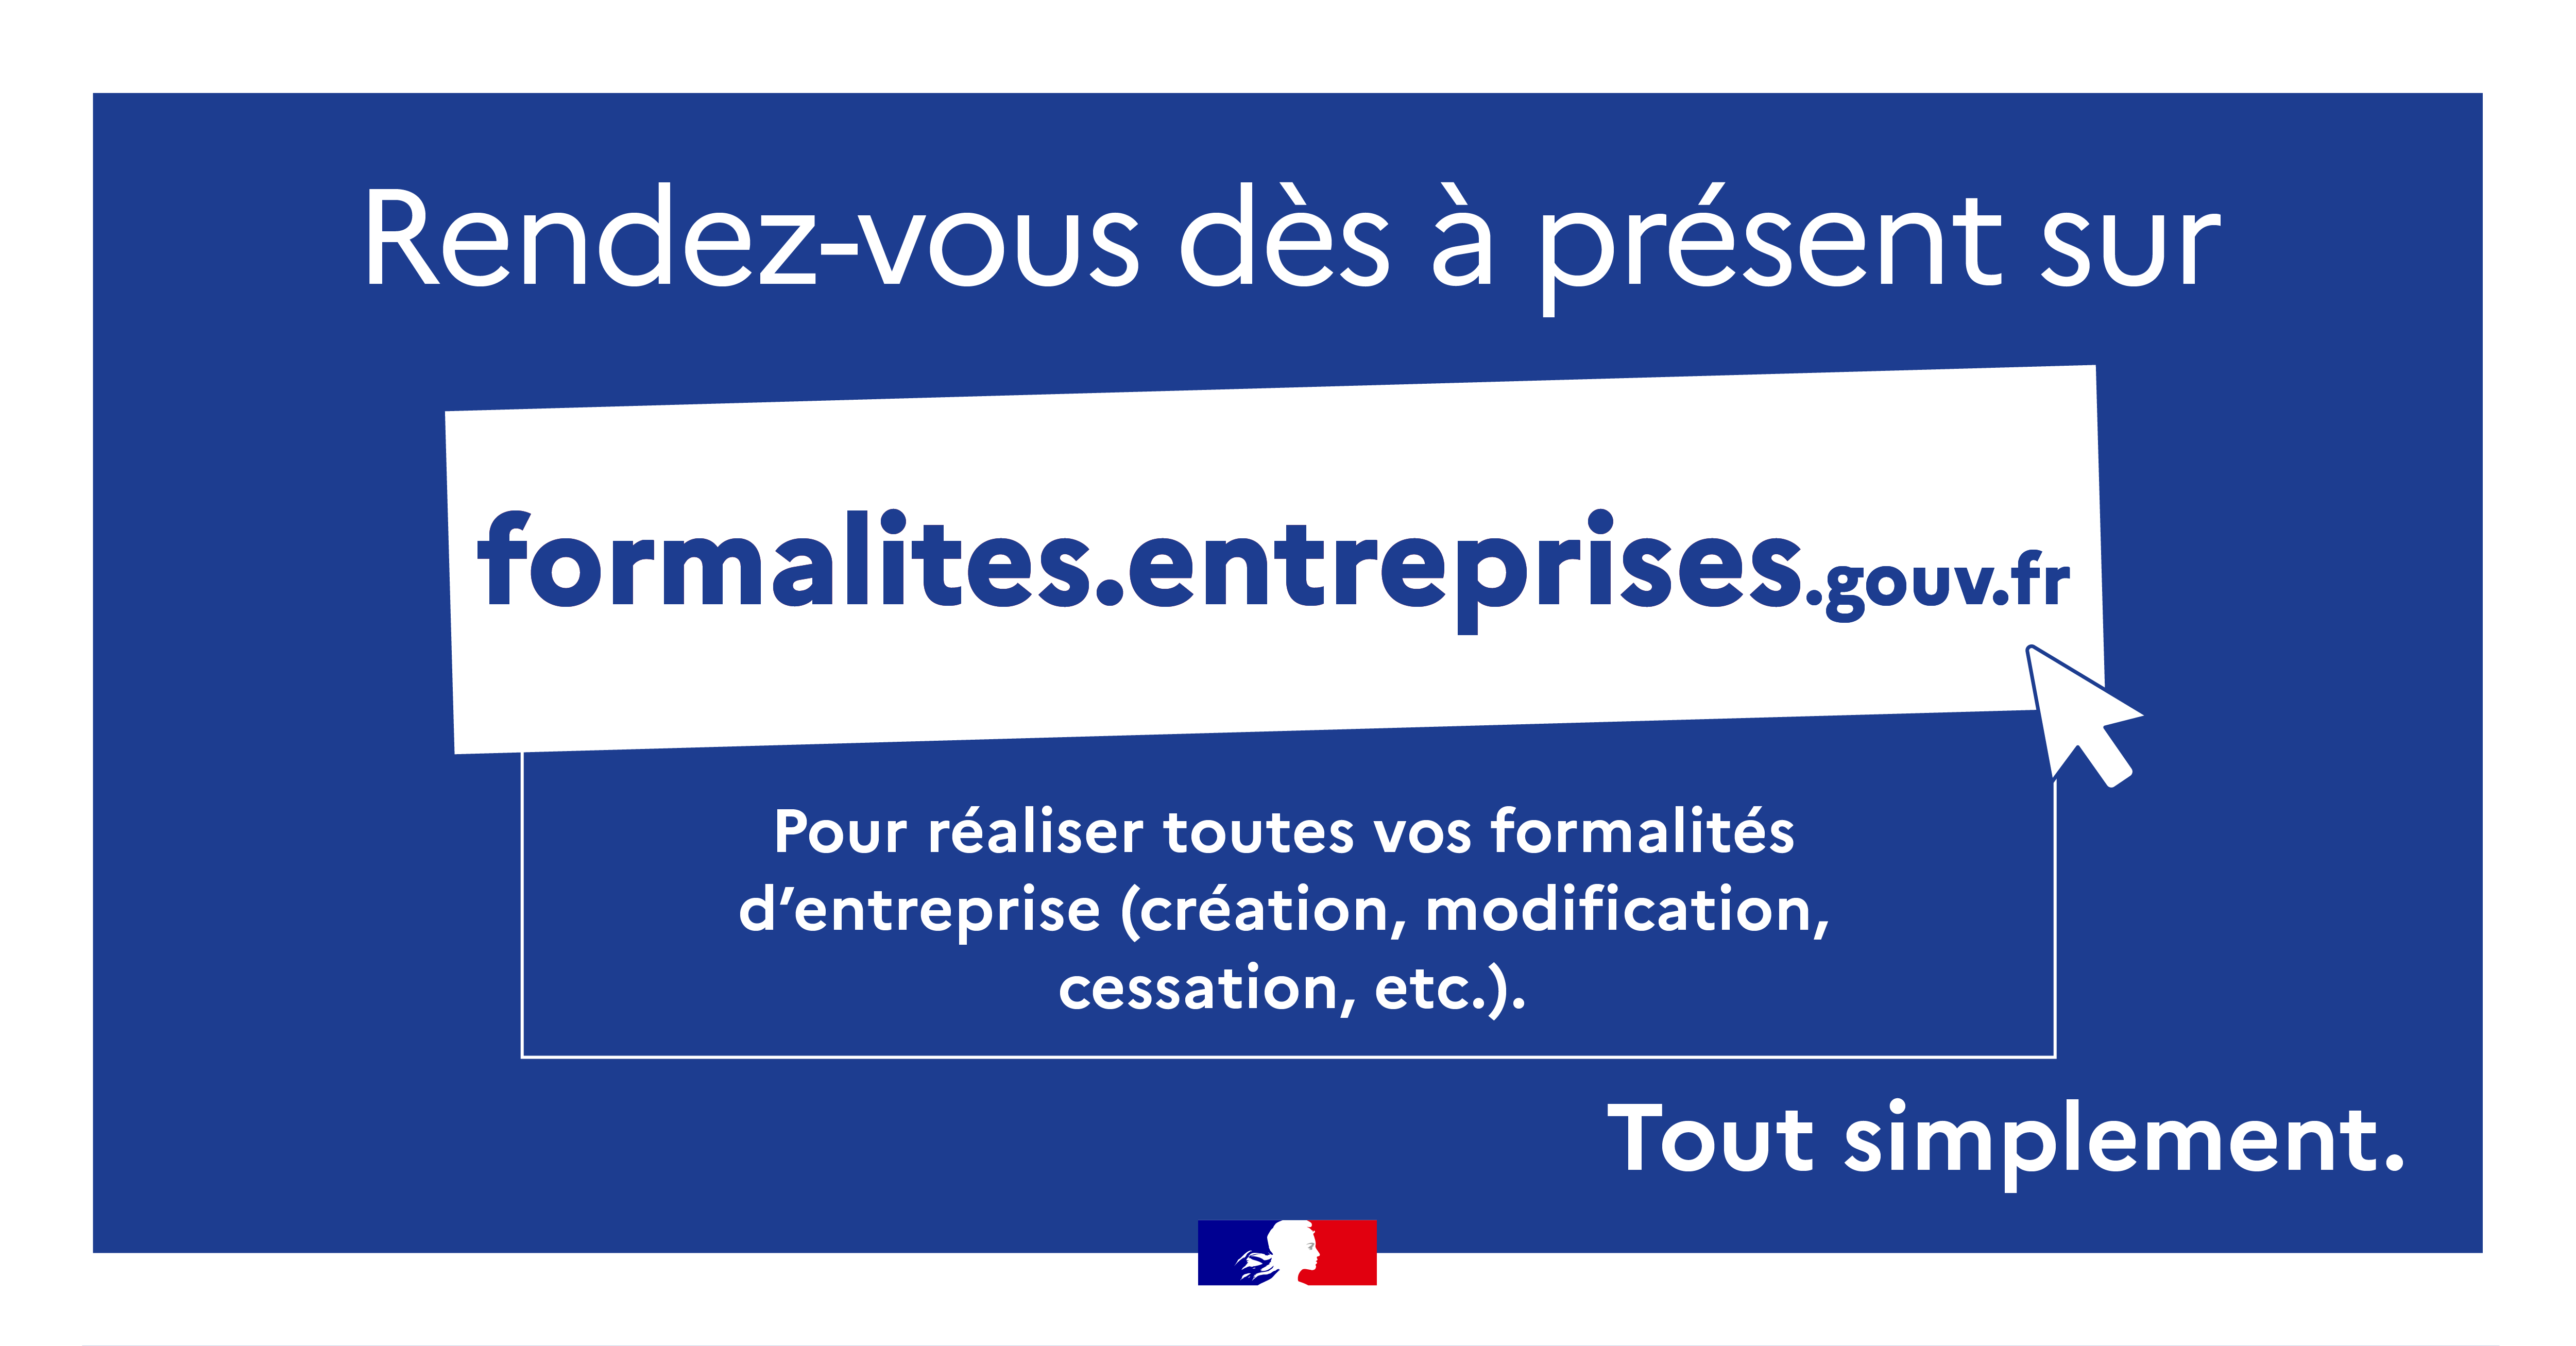 Rendez-vous dès à présent sur https://formalites.entreprises.gouv.fr